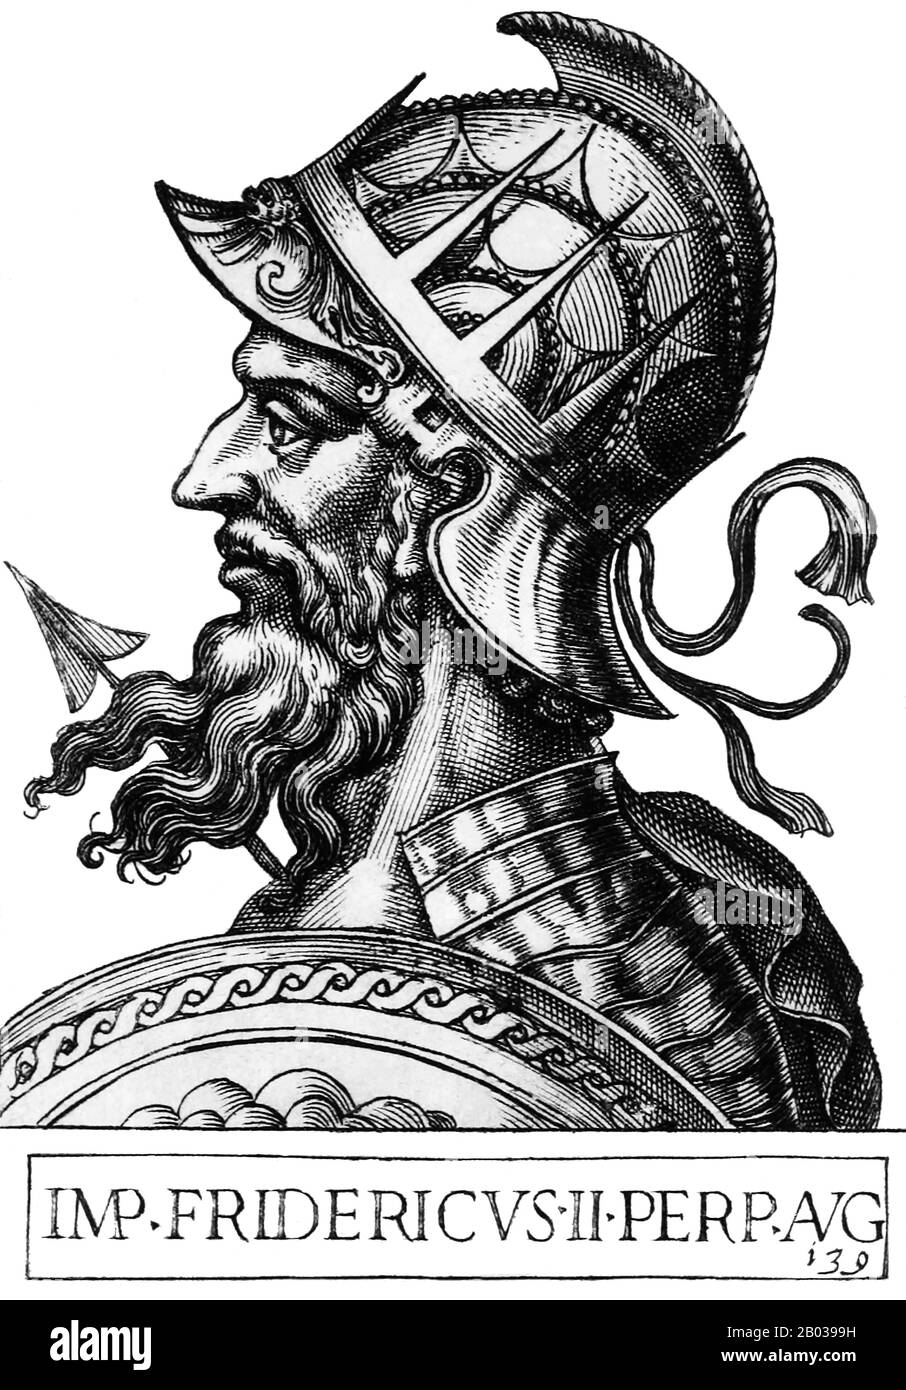 Frederick II (1194-1250) était le fils de l'empereur Henry VI, et n'était qu'un bébé lorsqu'il était couronné roi de Sicile par sa mère en 1198. Quand sa mère est décédée la même année, il a été donné au Pape Innocent III, qui est devenu son tuteur. Quand Frederick est arrivé en 1208, il a affirmé son pouvoir sur la Sicile. L'empereur Otto IV envahit l'Italie en 1209, espérant conquérir la Sicile et amener Frederick au talon, mais en 1211, Frederick a été élu par contumace comme roi d'Allemagne par divers princes impériaux nourris avec le règne d'Otto. Frederick est entré en Allemagne avec une petite armée et a été officiellement couronné roi d'Allemagne en Banque D'Images